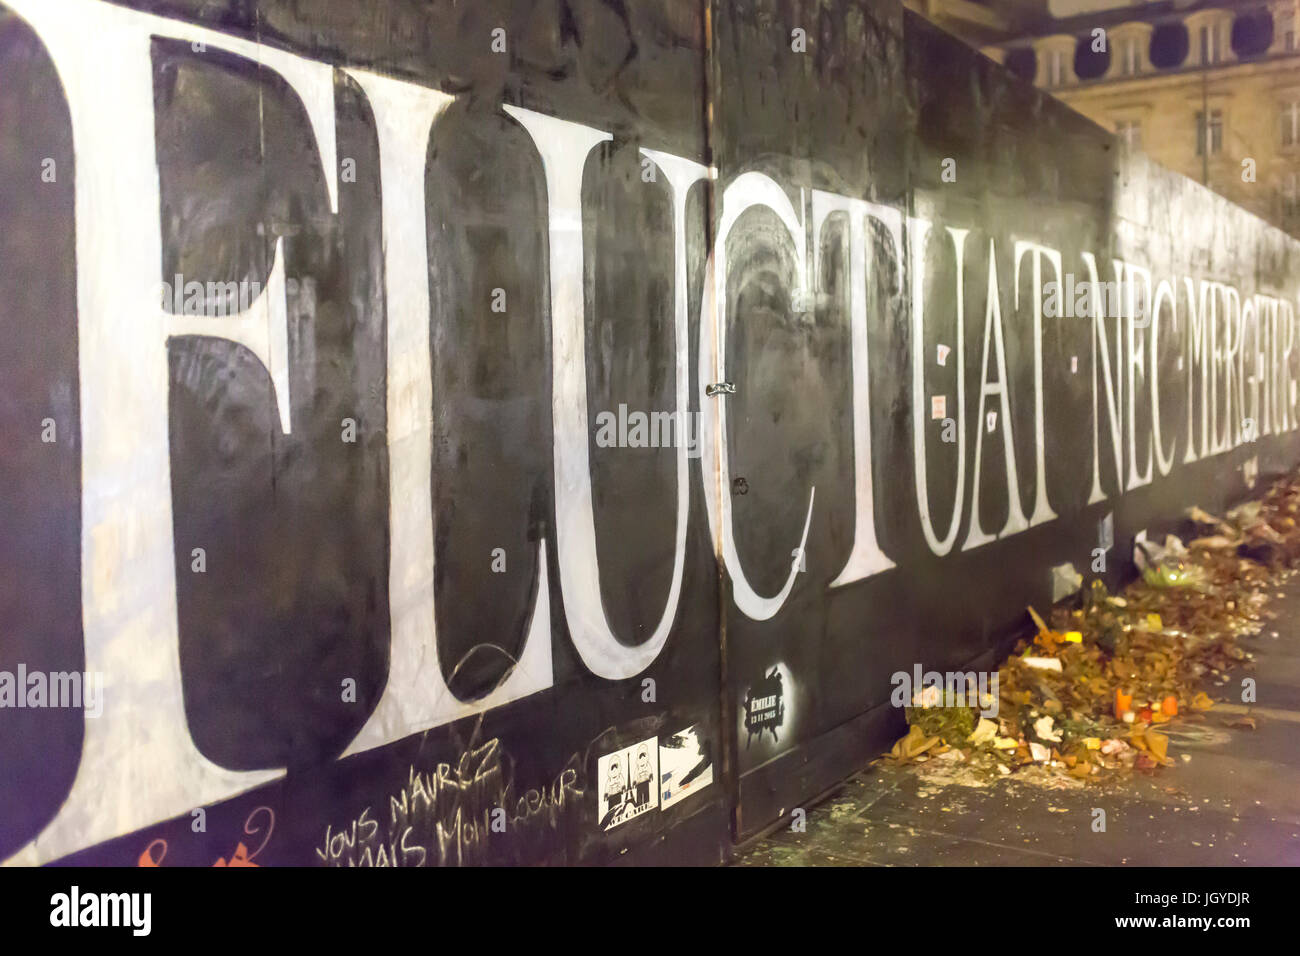 Schwankungsbandbreiten nec mergitur. Spontane Hommage an die Opfer der Terroranschläge in Paris, den 13. November 2015. Stockfoto